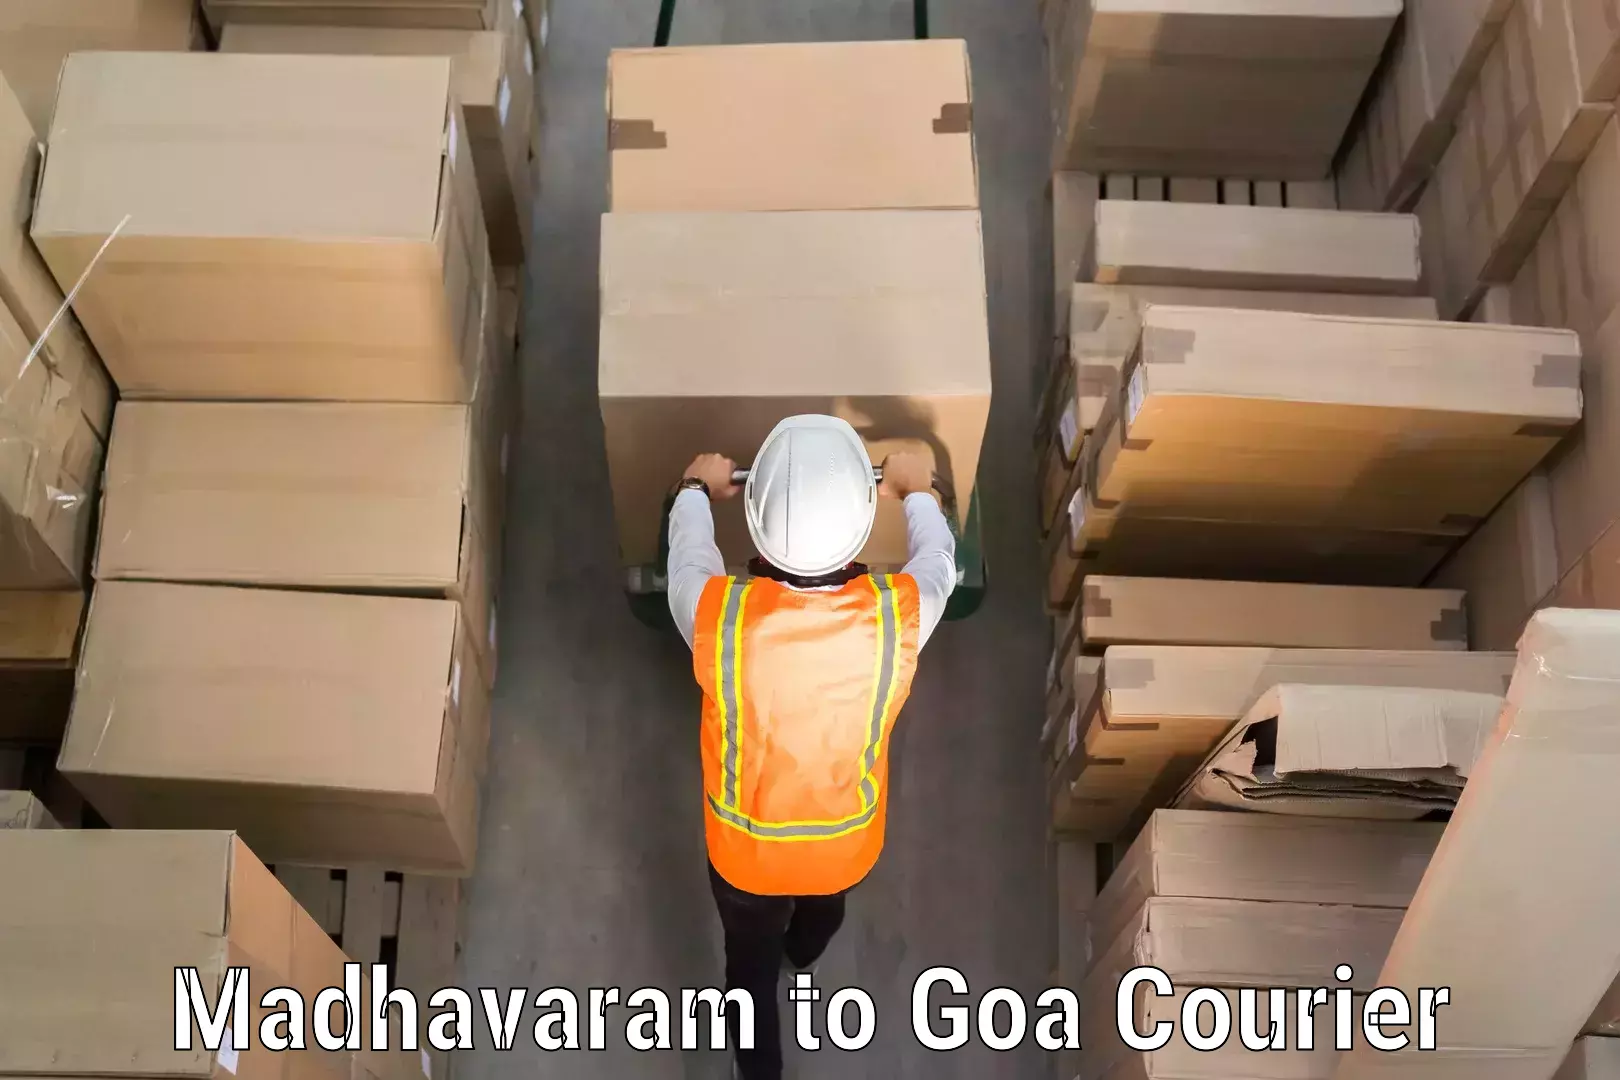 Luggage transport company Madhavaram to Goa